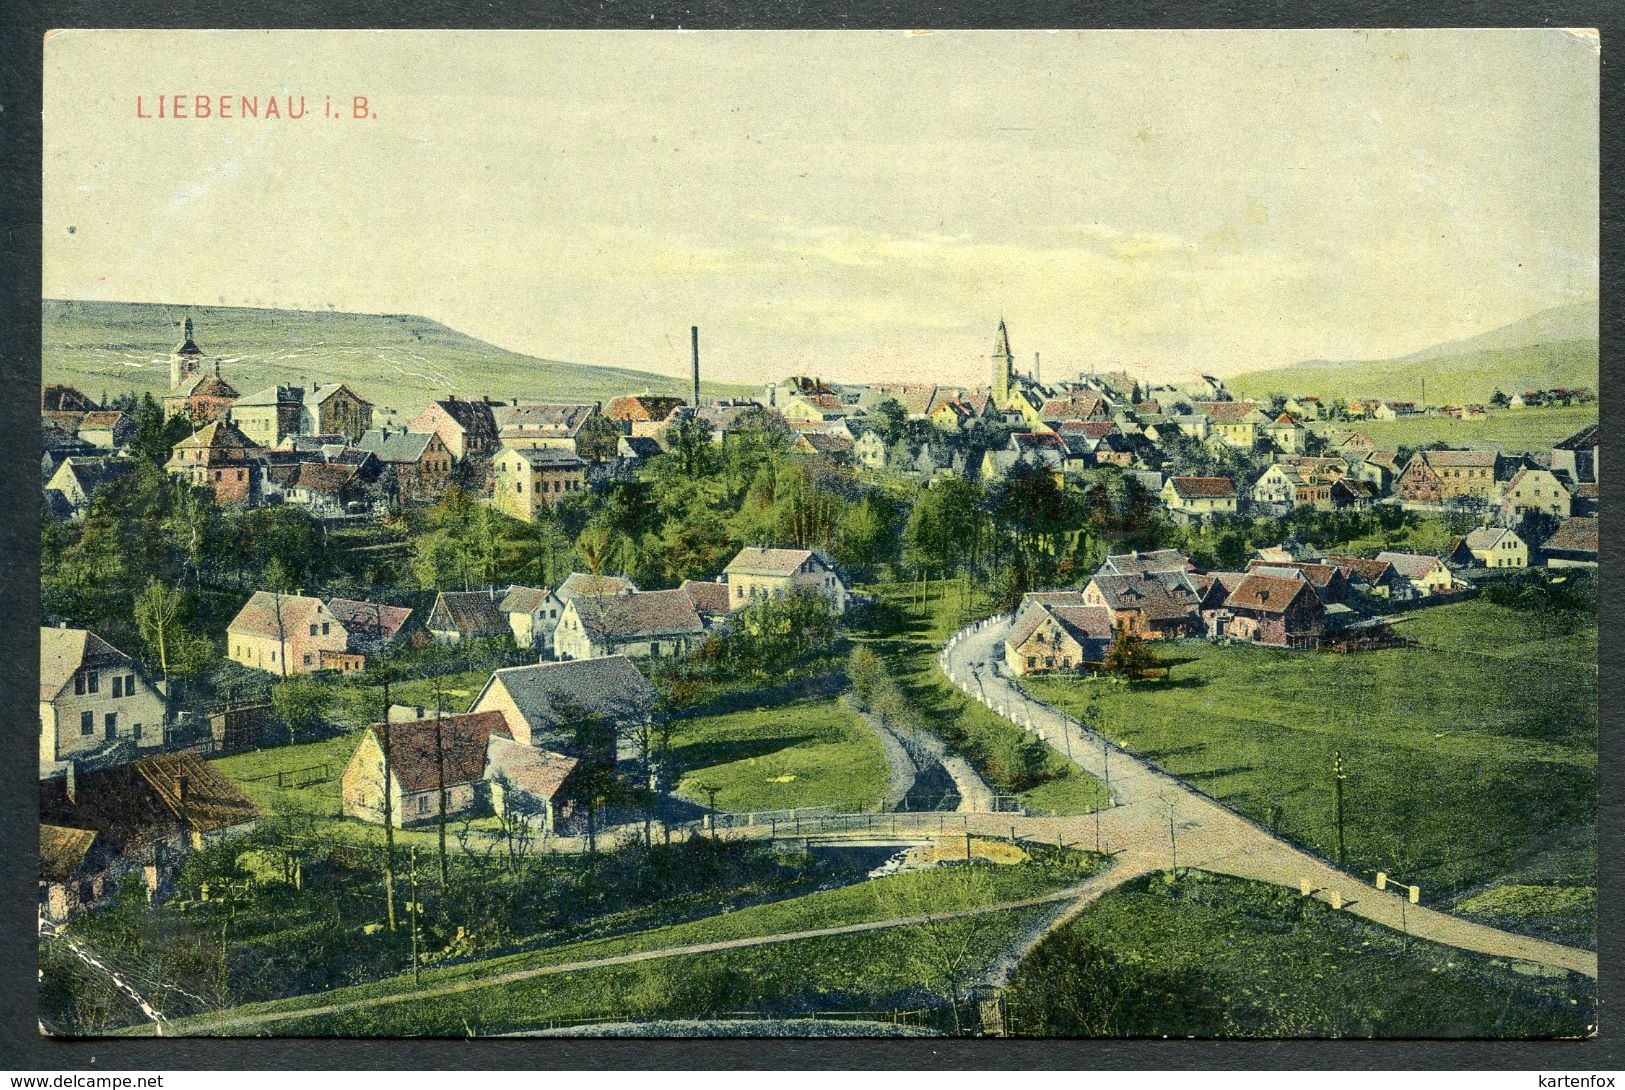 Liebenau I. B., Hodkovice, 25.7.1910 - Czech Republic